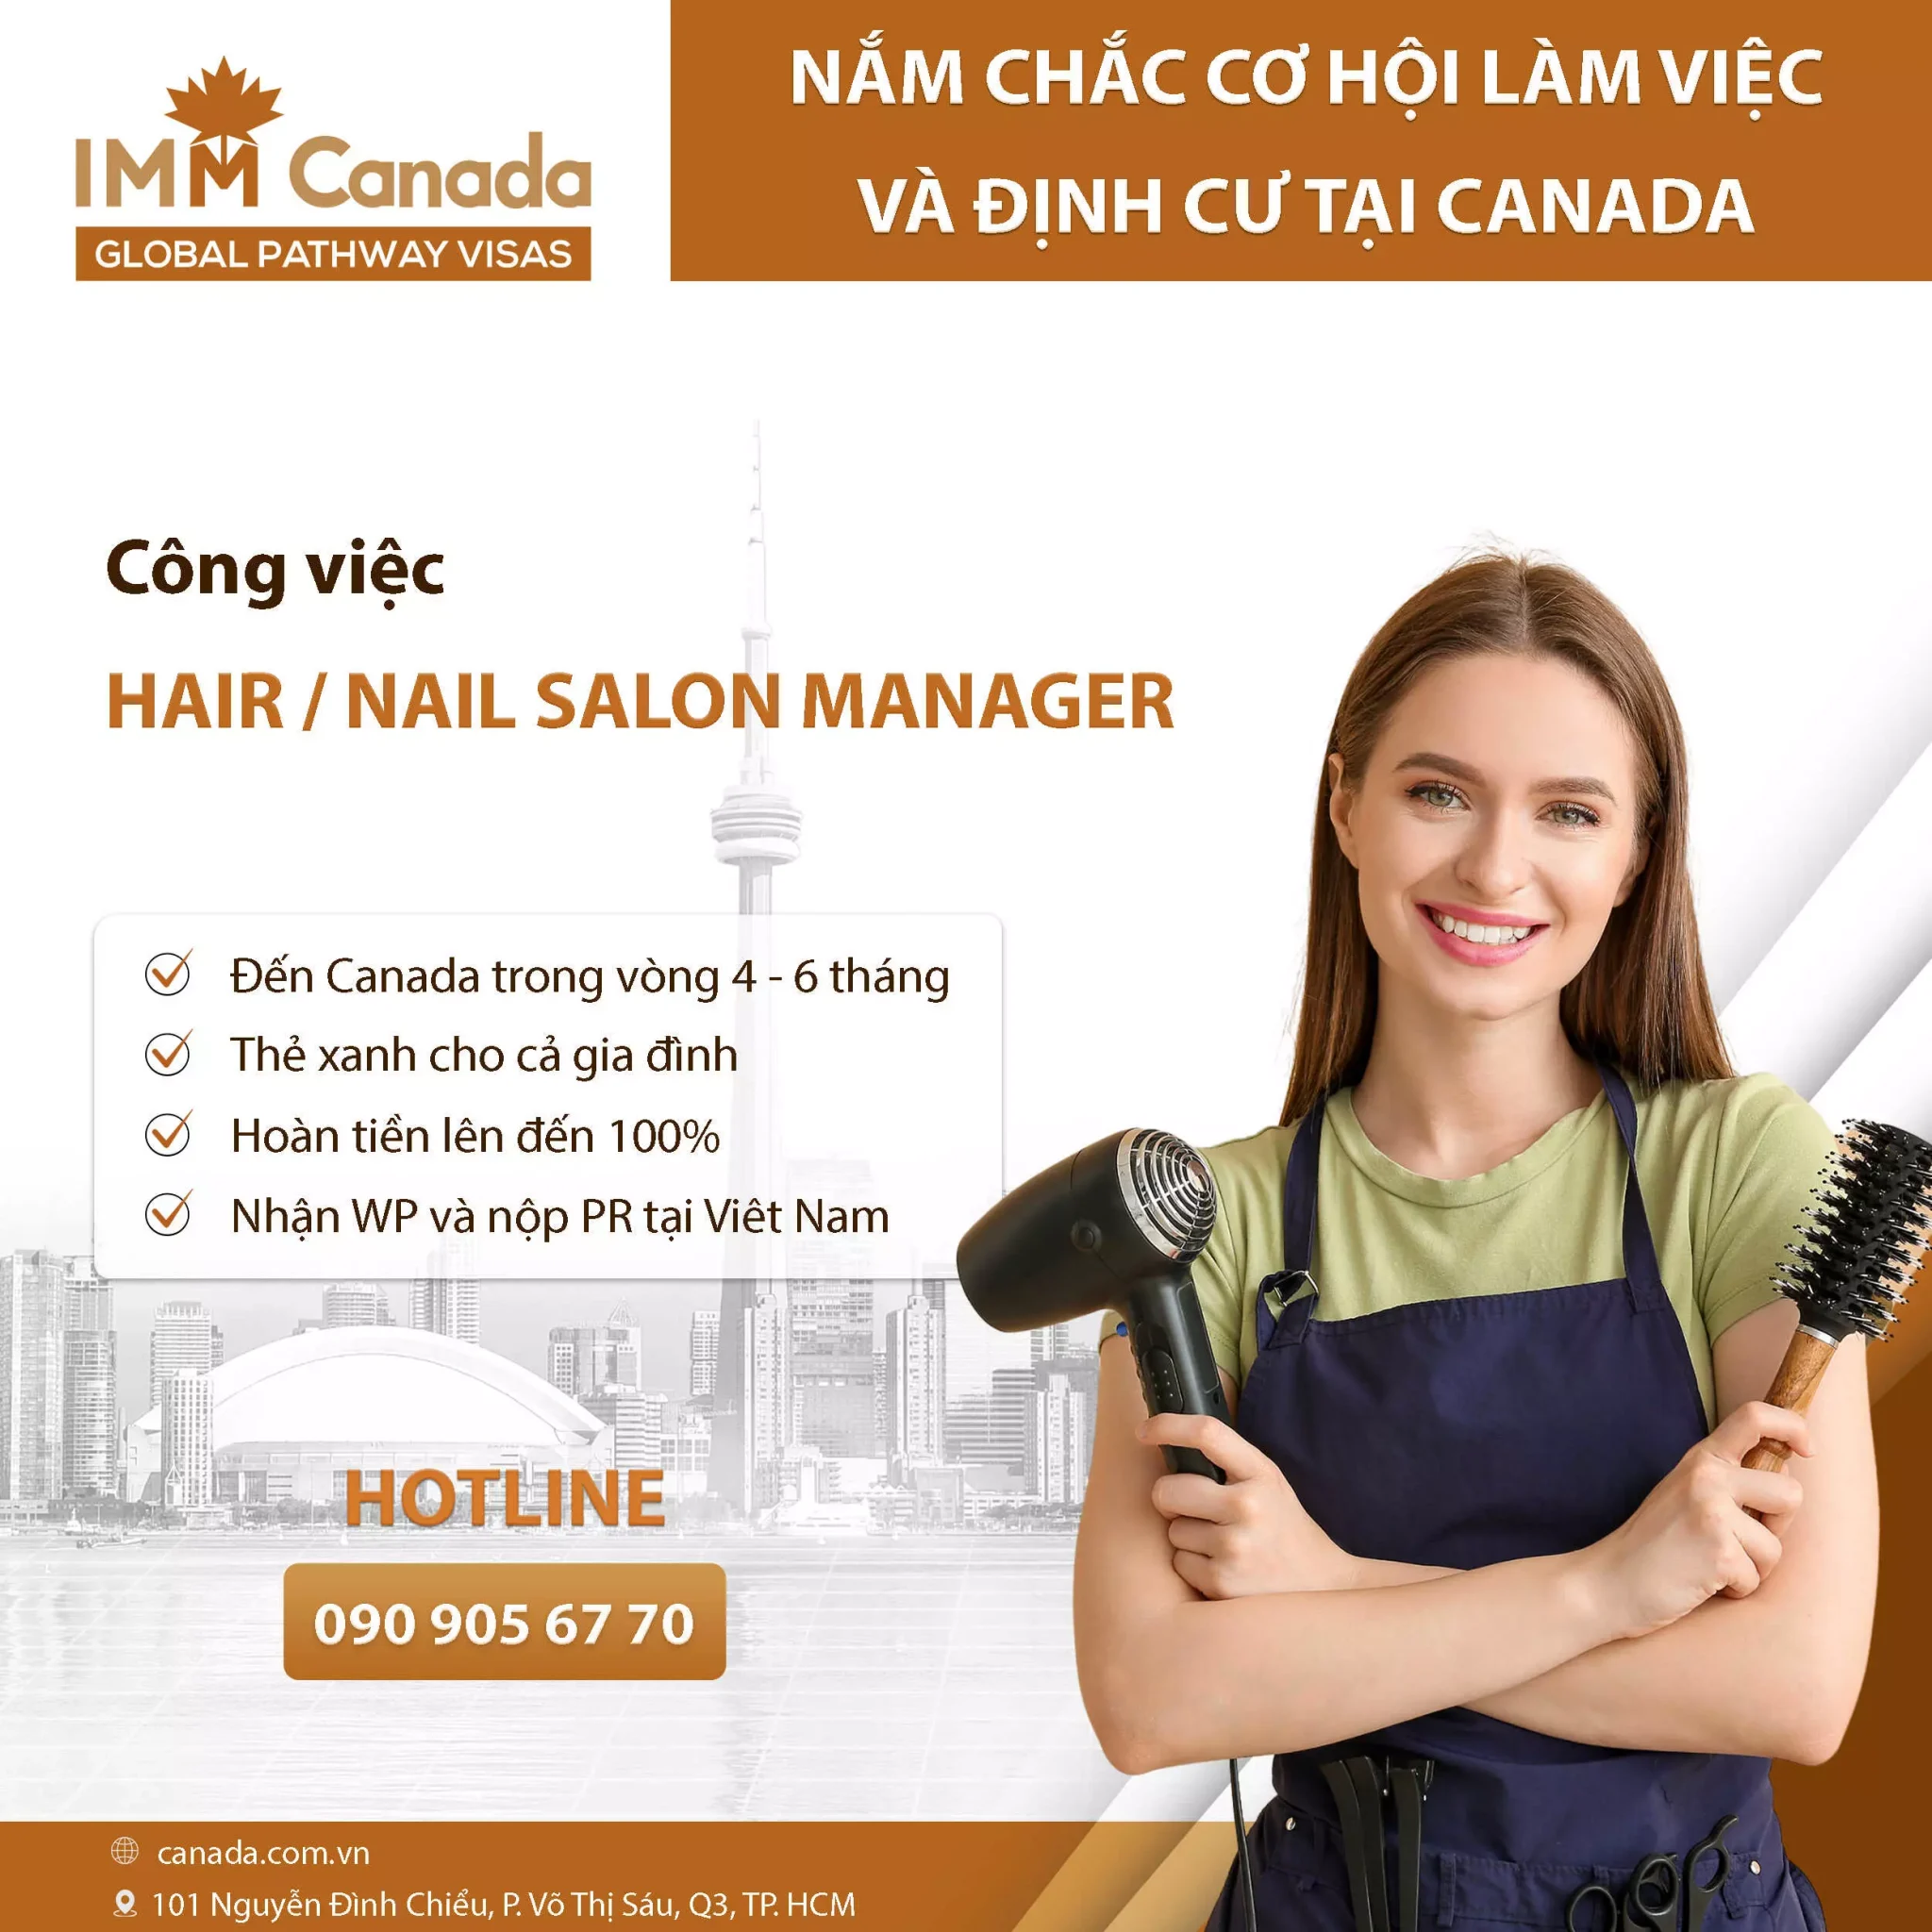 Cơ hội định cư Canada cho các ngành nghề dịch vụ Nail & Spa - Hair or Nails Salon Manager